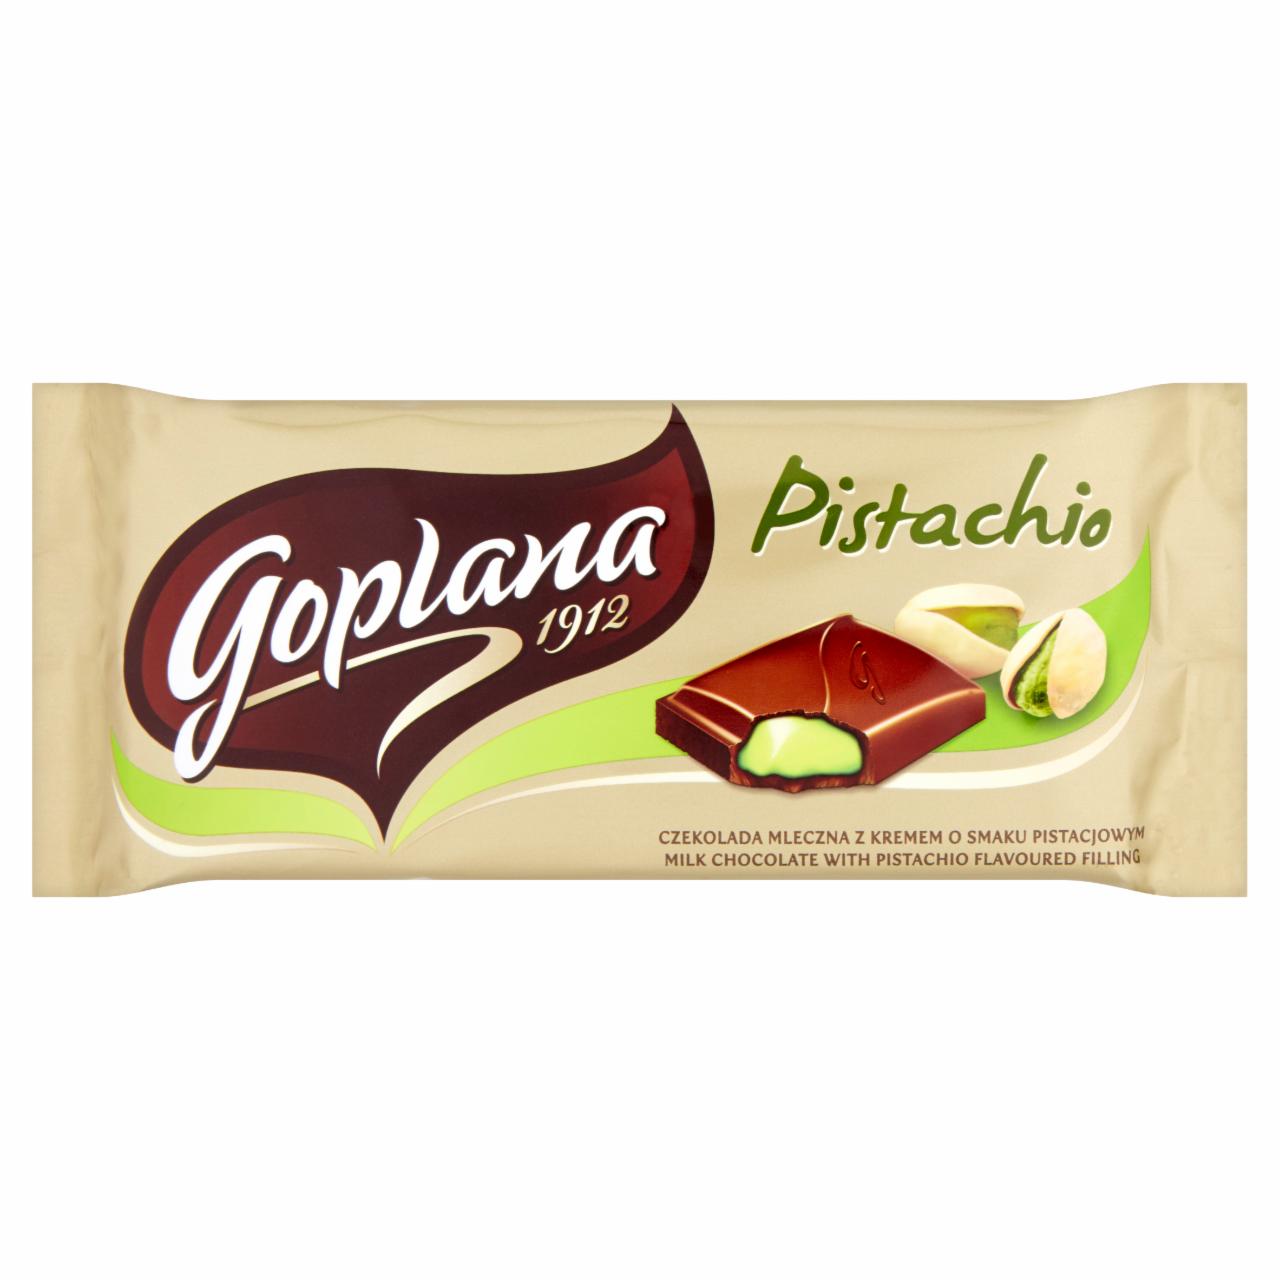 Zdjęcia - Goplana Pistachio Czekolada mleczna z kremem o smaku pistacjowym 90 g